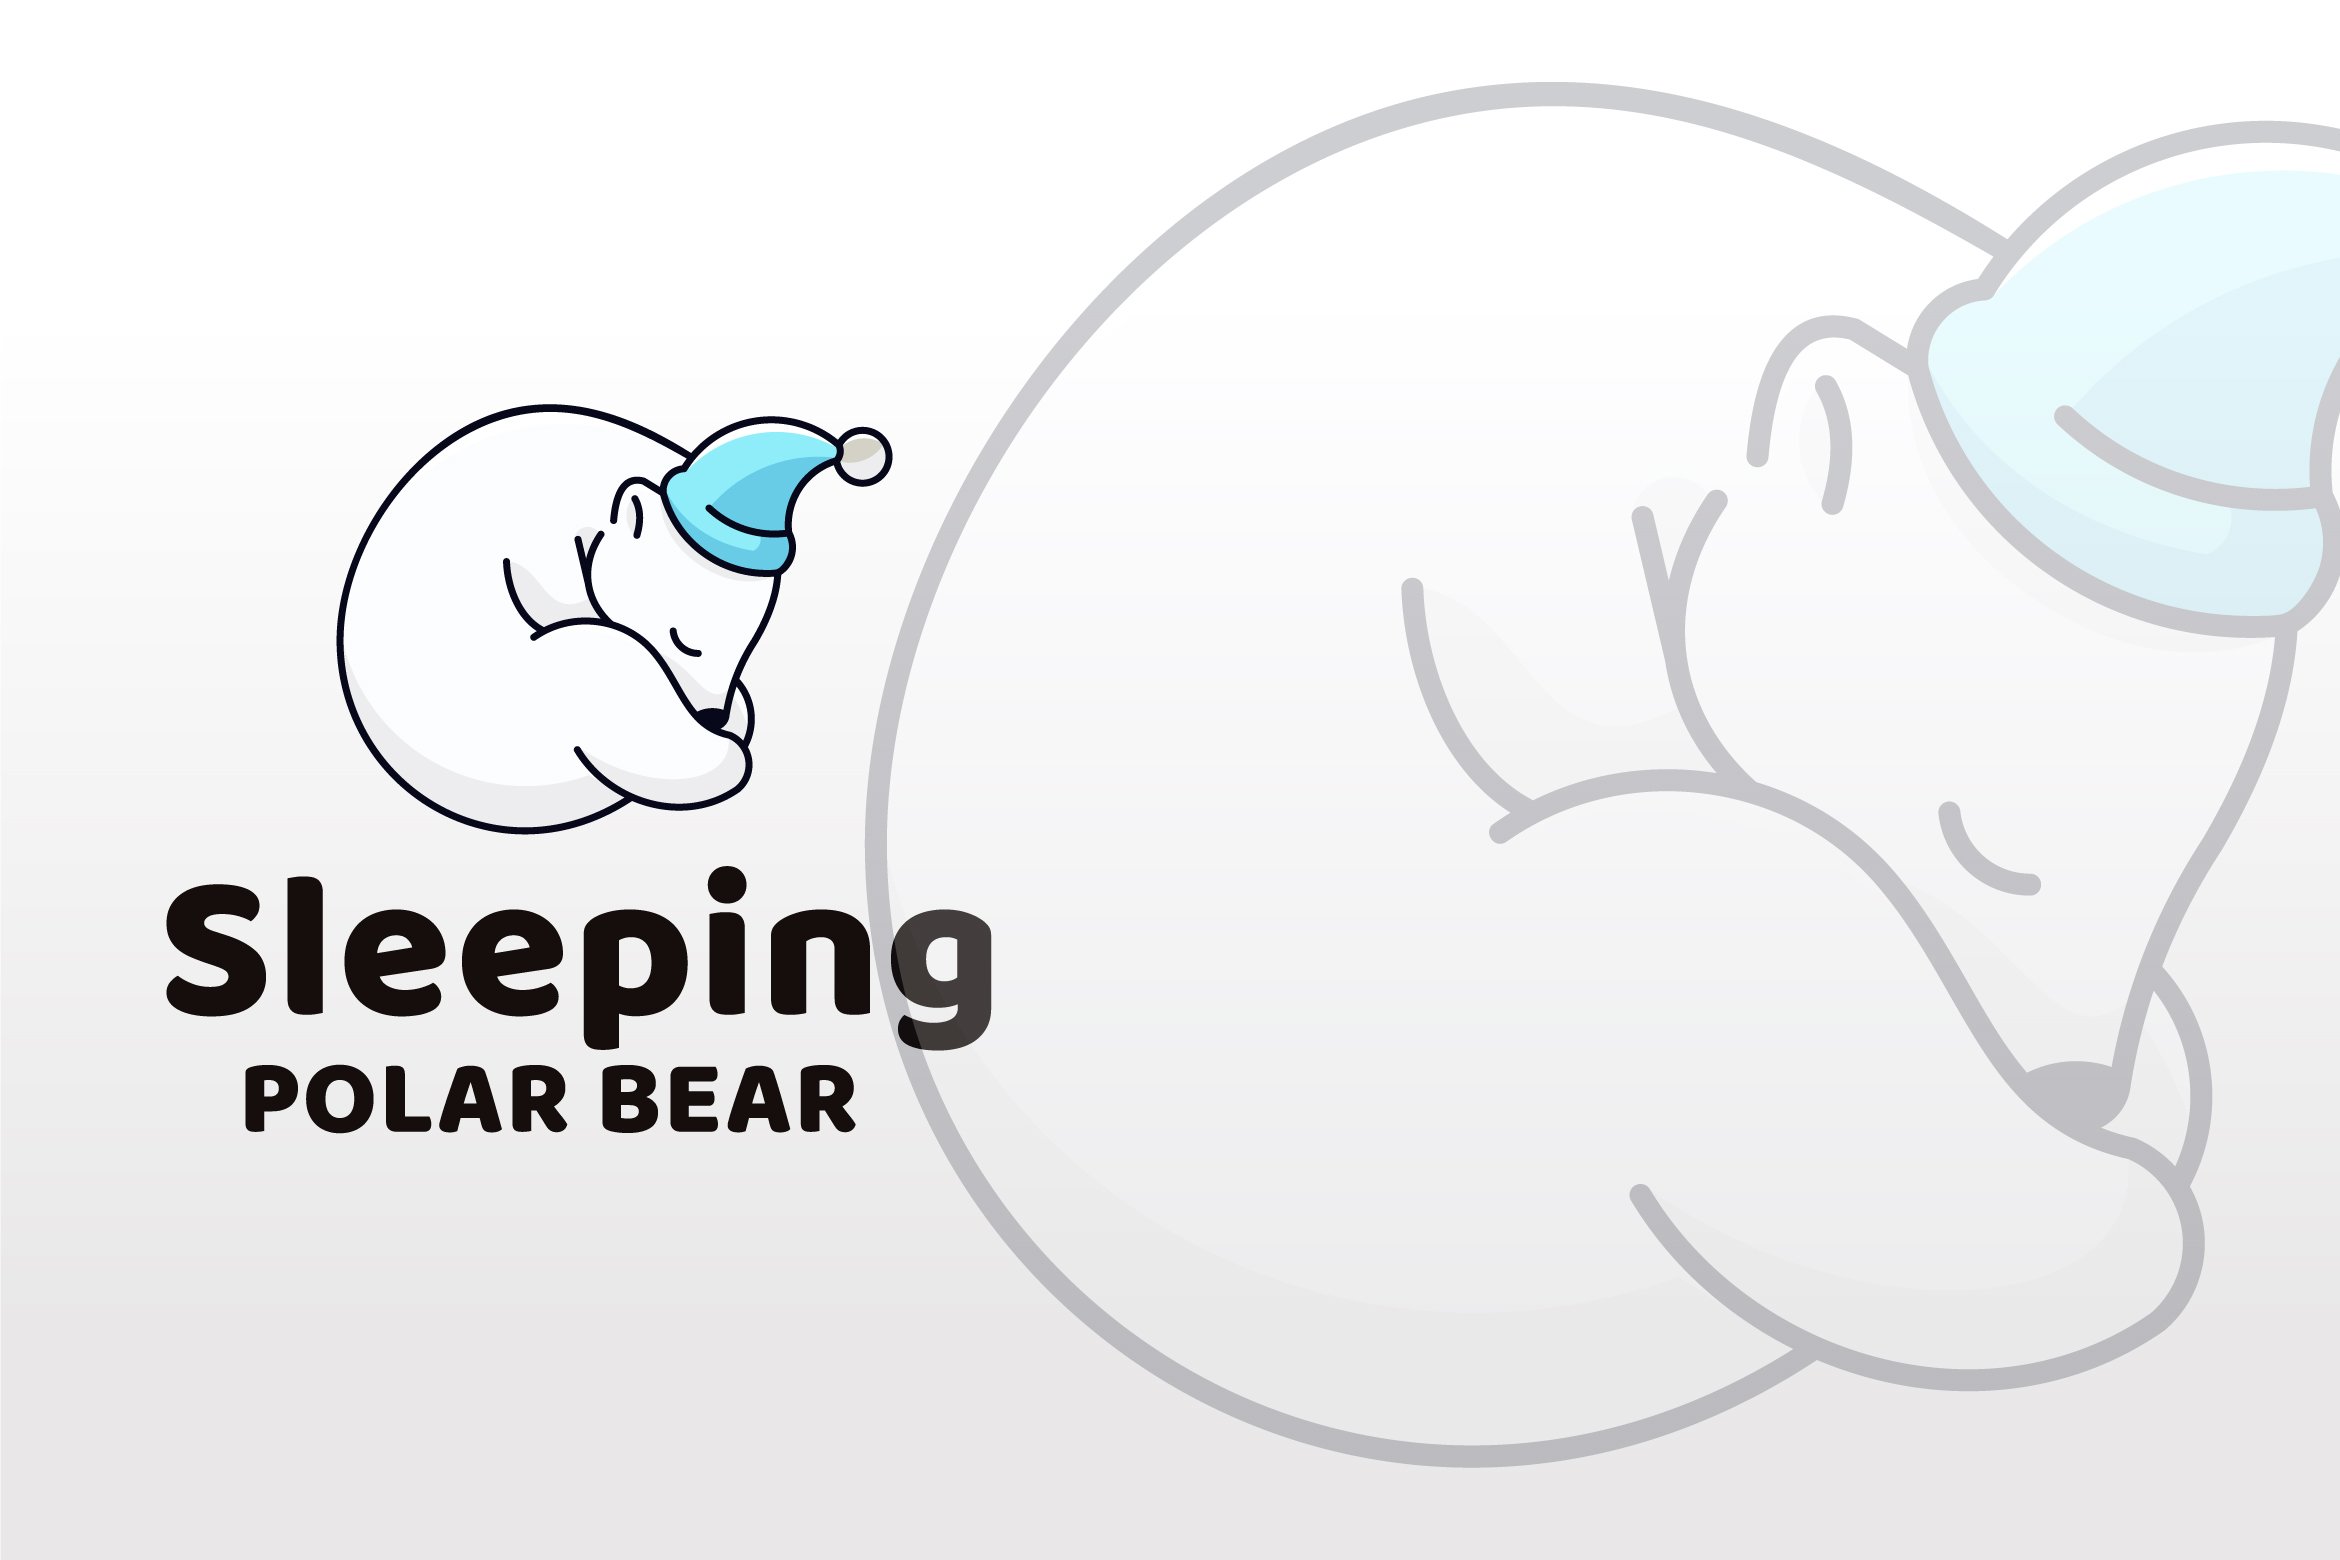 Sleeping Polar Bear Logo Template cover image.